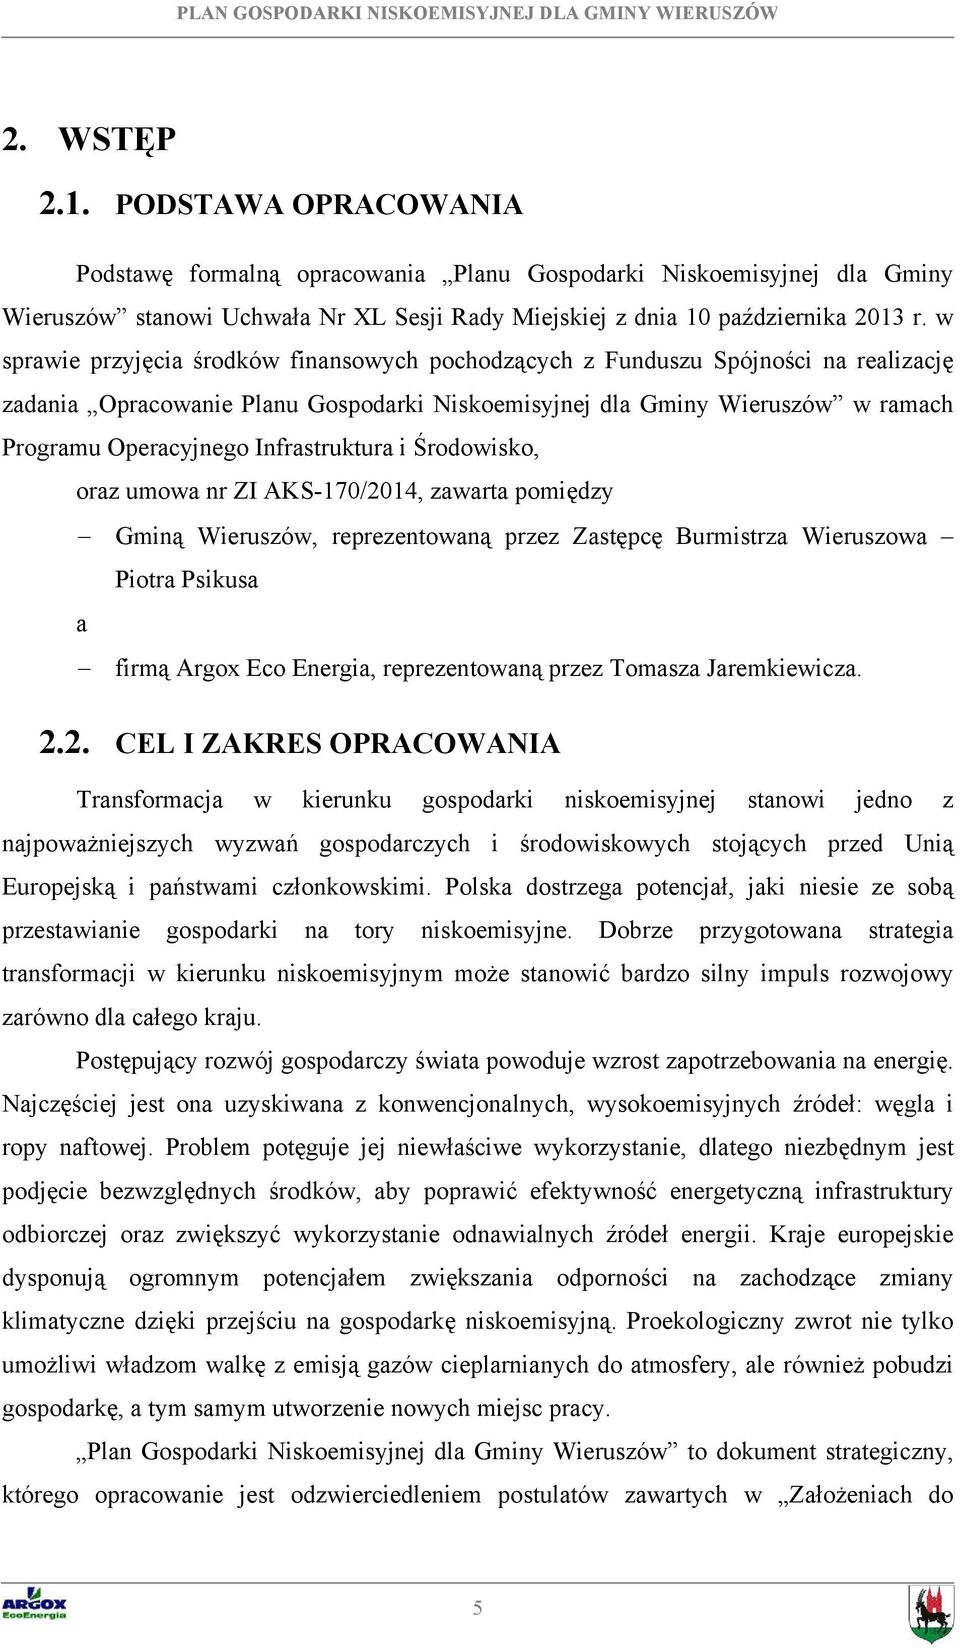 Infrastruktura i Środowisko, oraz umowa nr ZI AKS-170/2014, zawarta pomiędzy Gminą Wieruszów, reprezentowaną przez Zastępcę Burmistrza Wieruszowa Piotra Psikusa a firmą Argox Eco Energia,